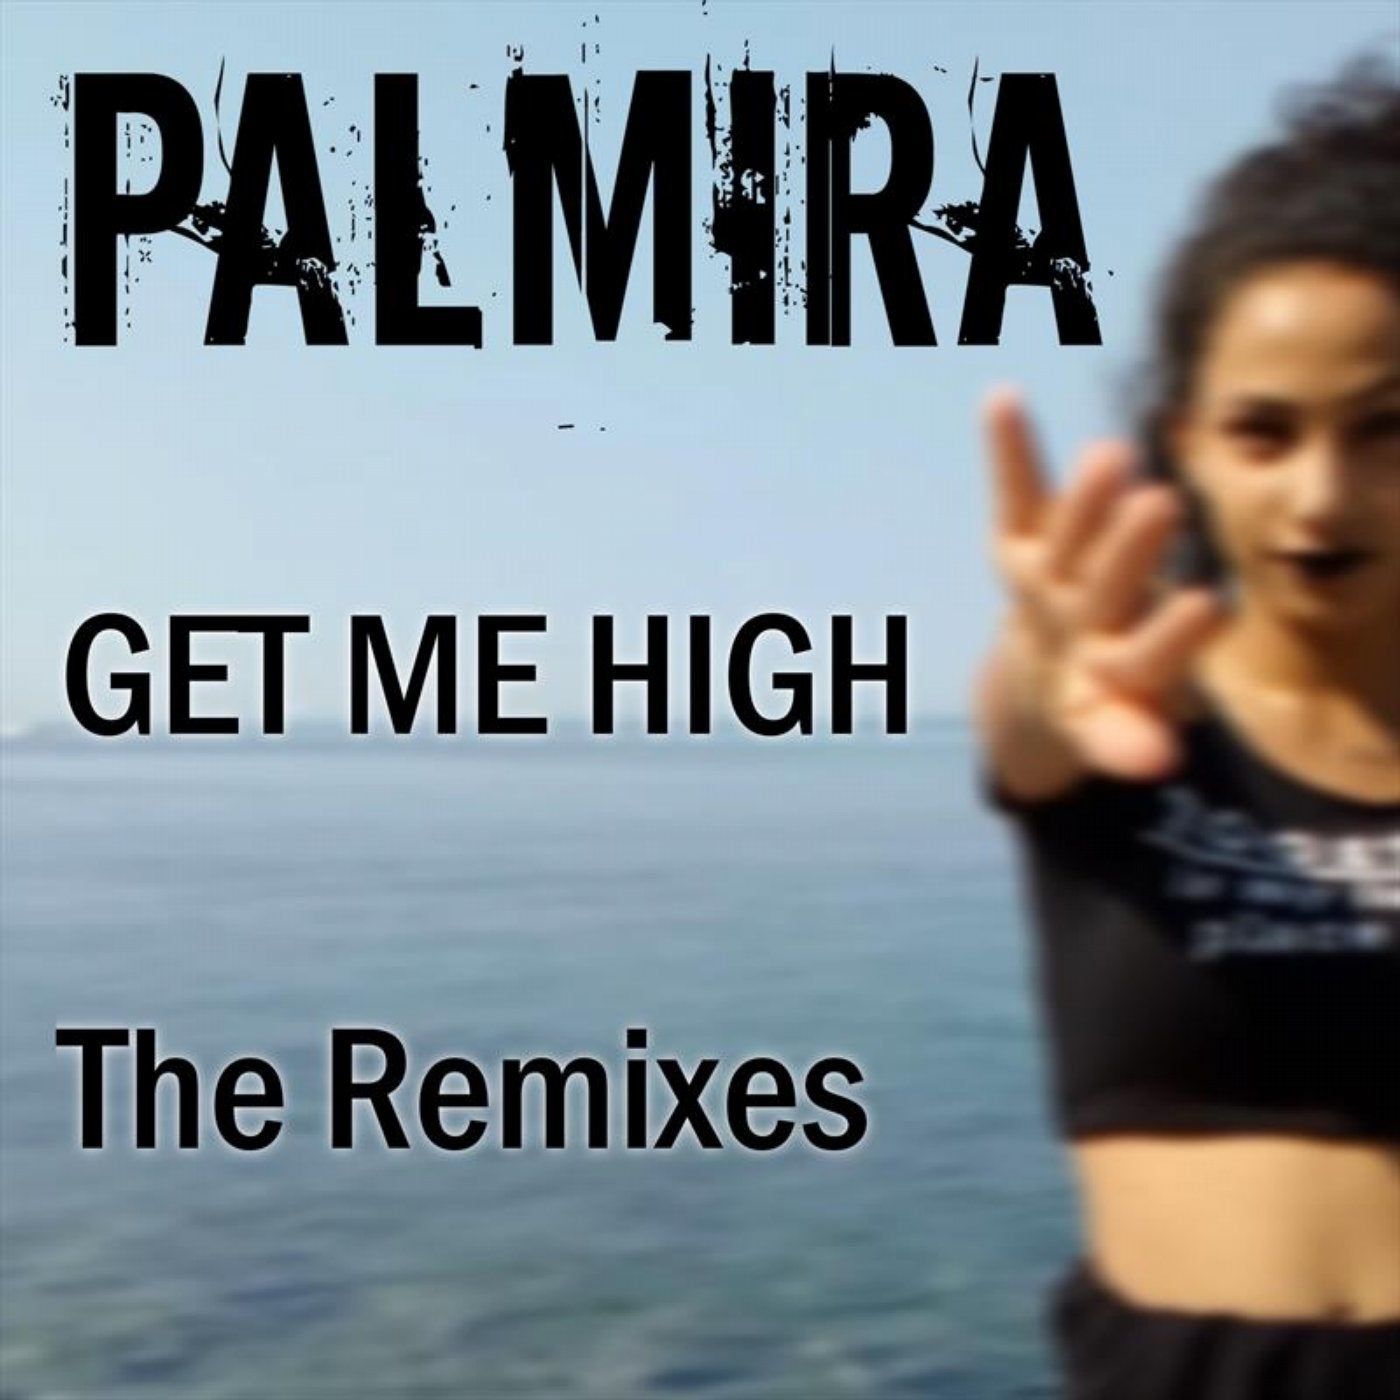 Get Me High - The Remixes